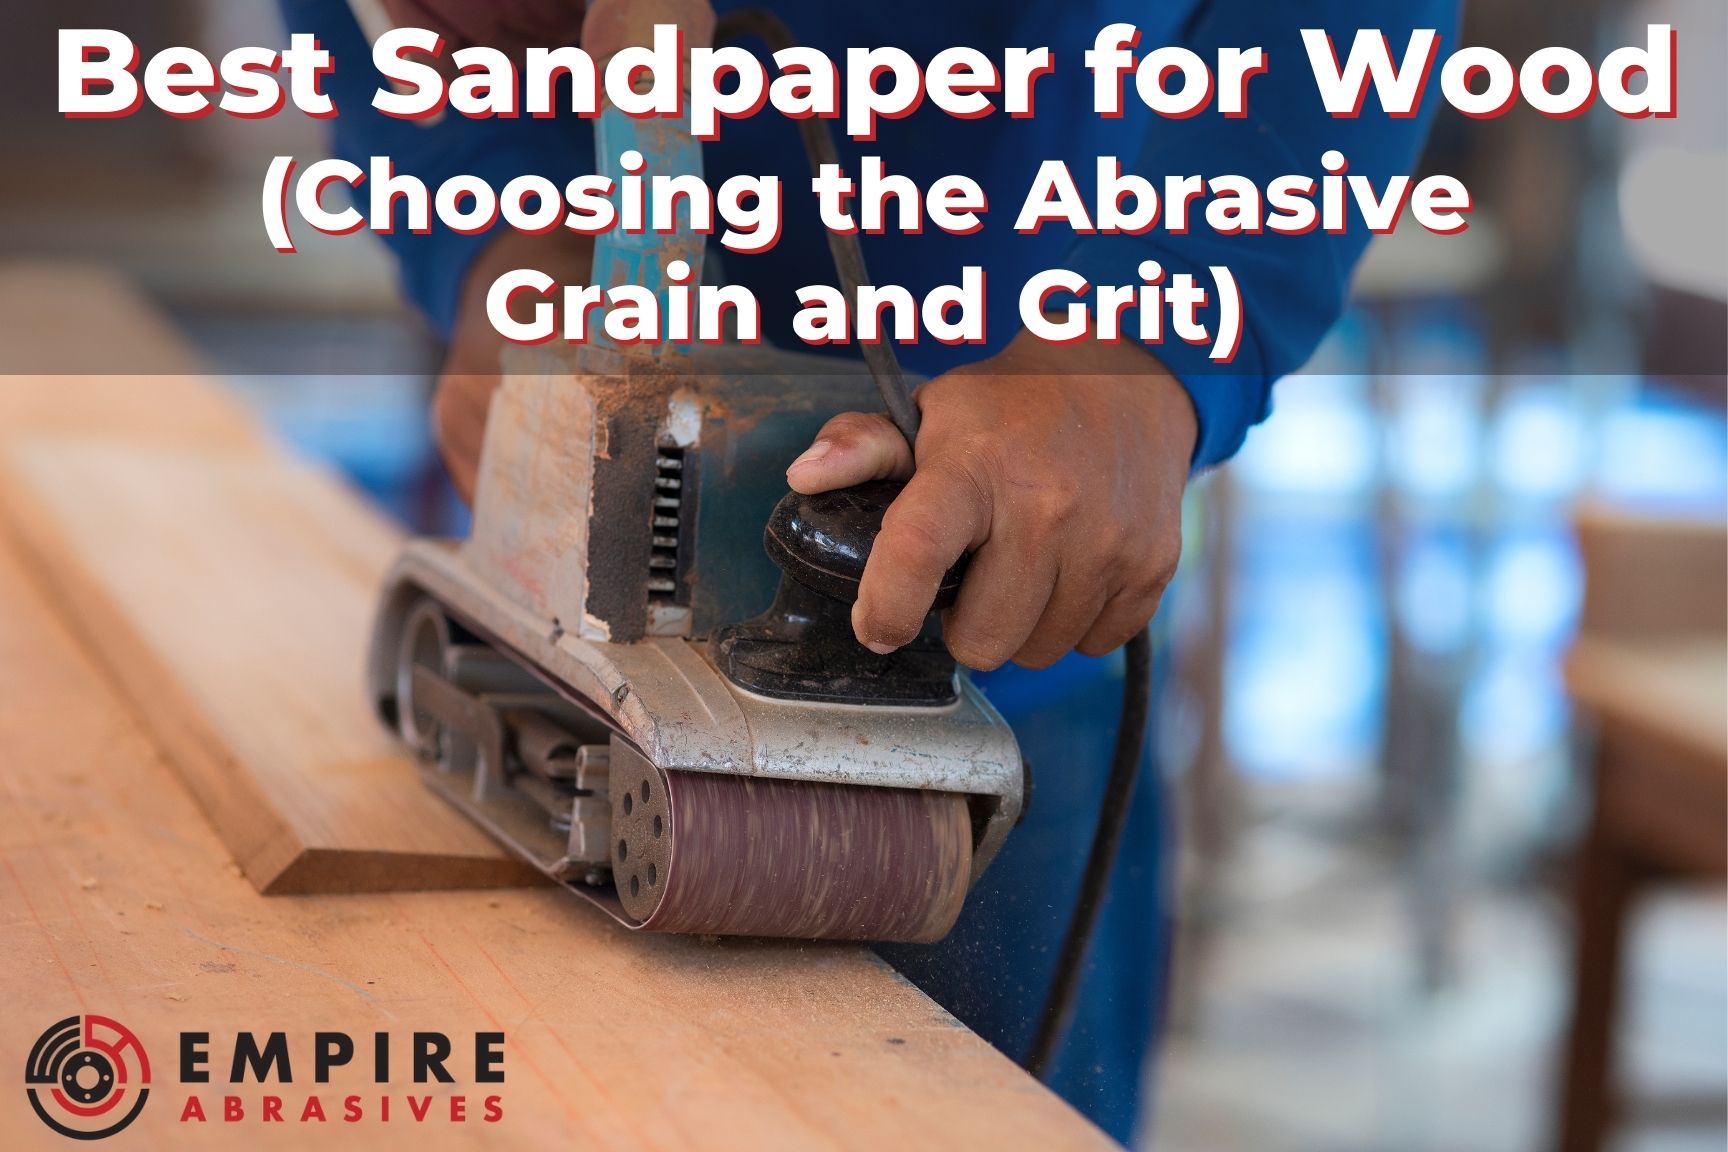 https://www.empireabrasives.com/product_images/uploaded_images/choosing-best-sandpaper-wood-sanding-abrasive-grain-grit.jpg